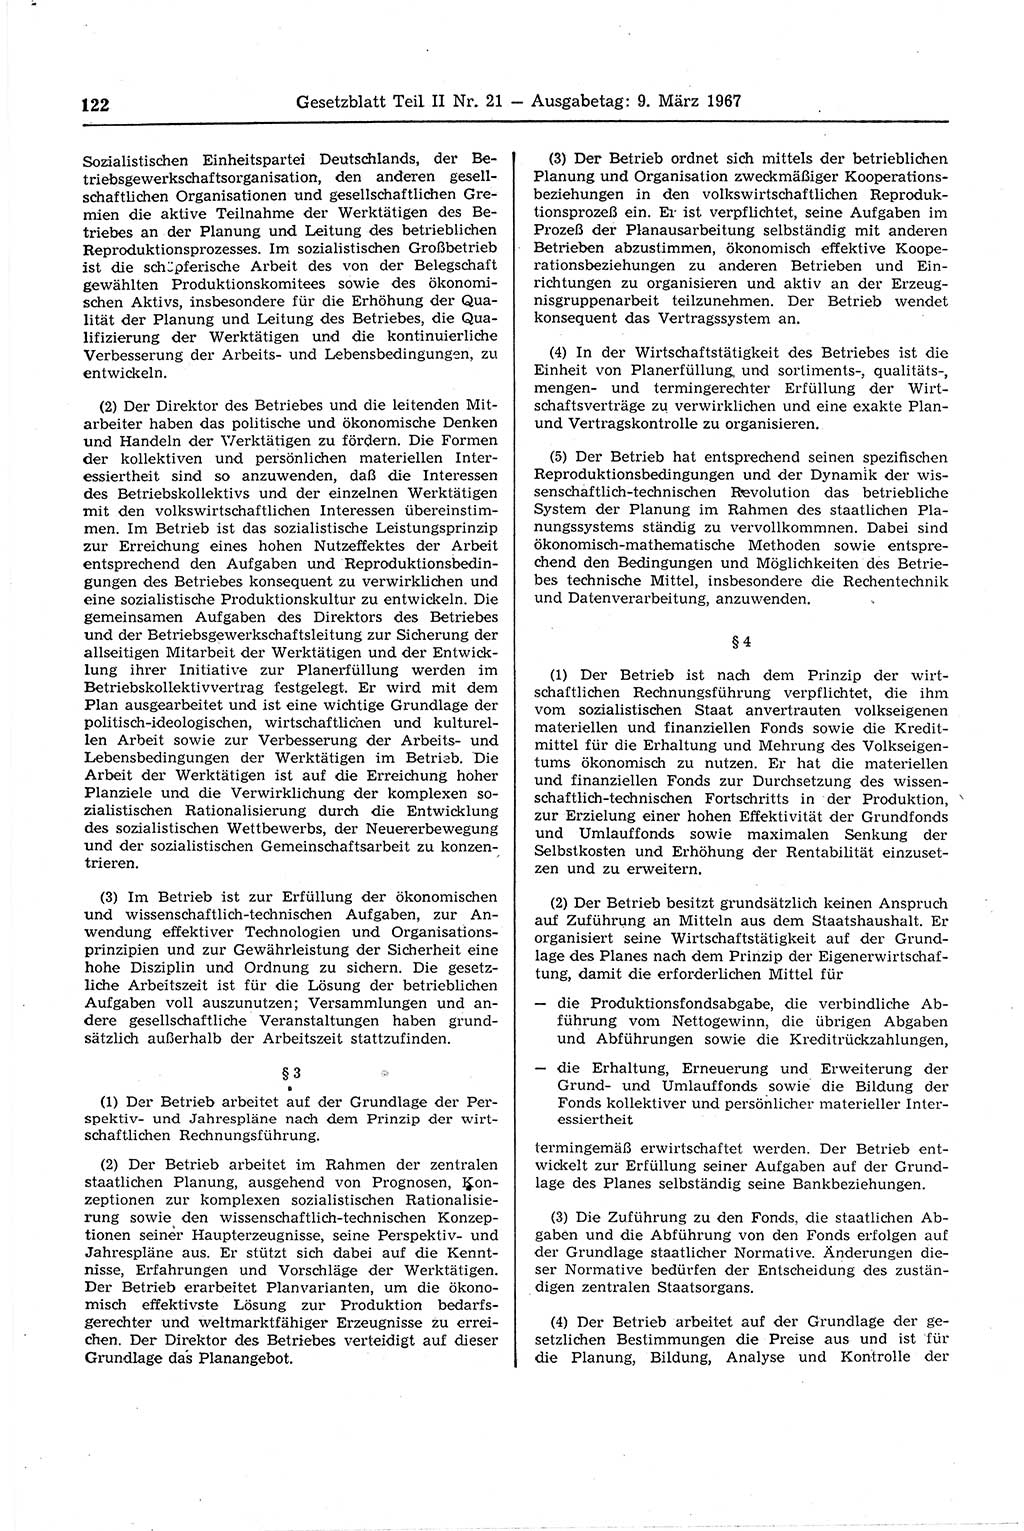 Gesetzblatt (GBl.) der Deutschen Demokratischen Republik (DDR) Teil ⅠⅠ 1967, Seite 122 (GBl. DDR ⅠⅠ 1967, S. 122)